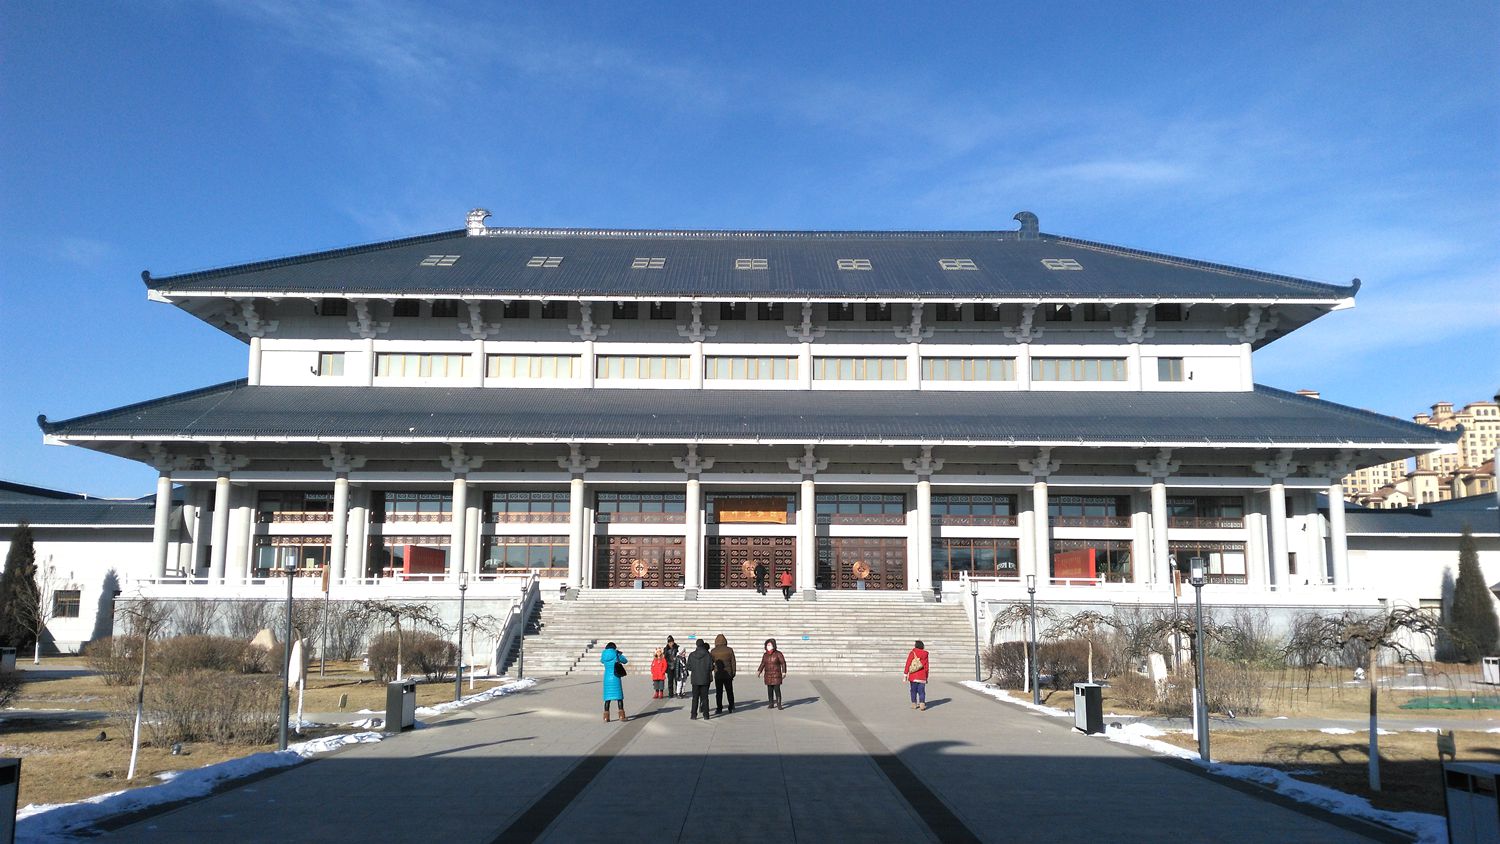 2022赤峰博物馆游玩攻略,赤峰博物馆位于赤峰市新城区...【去哪儿攻略】